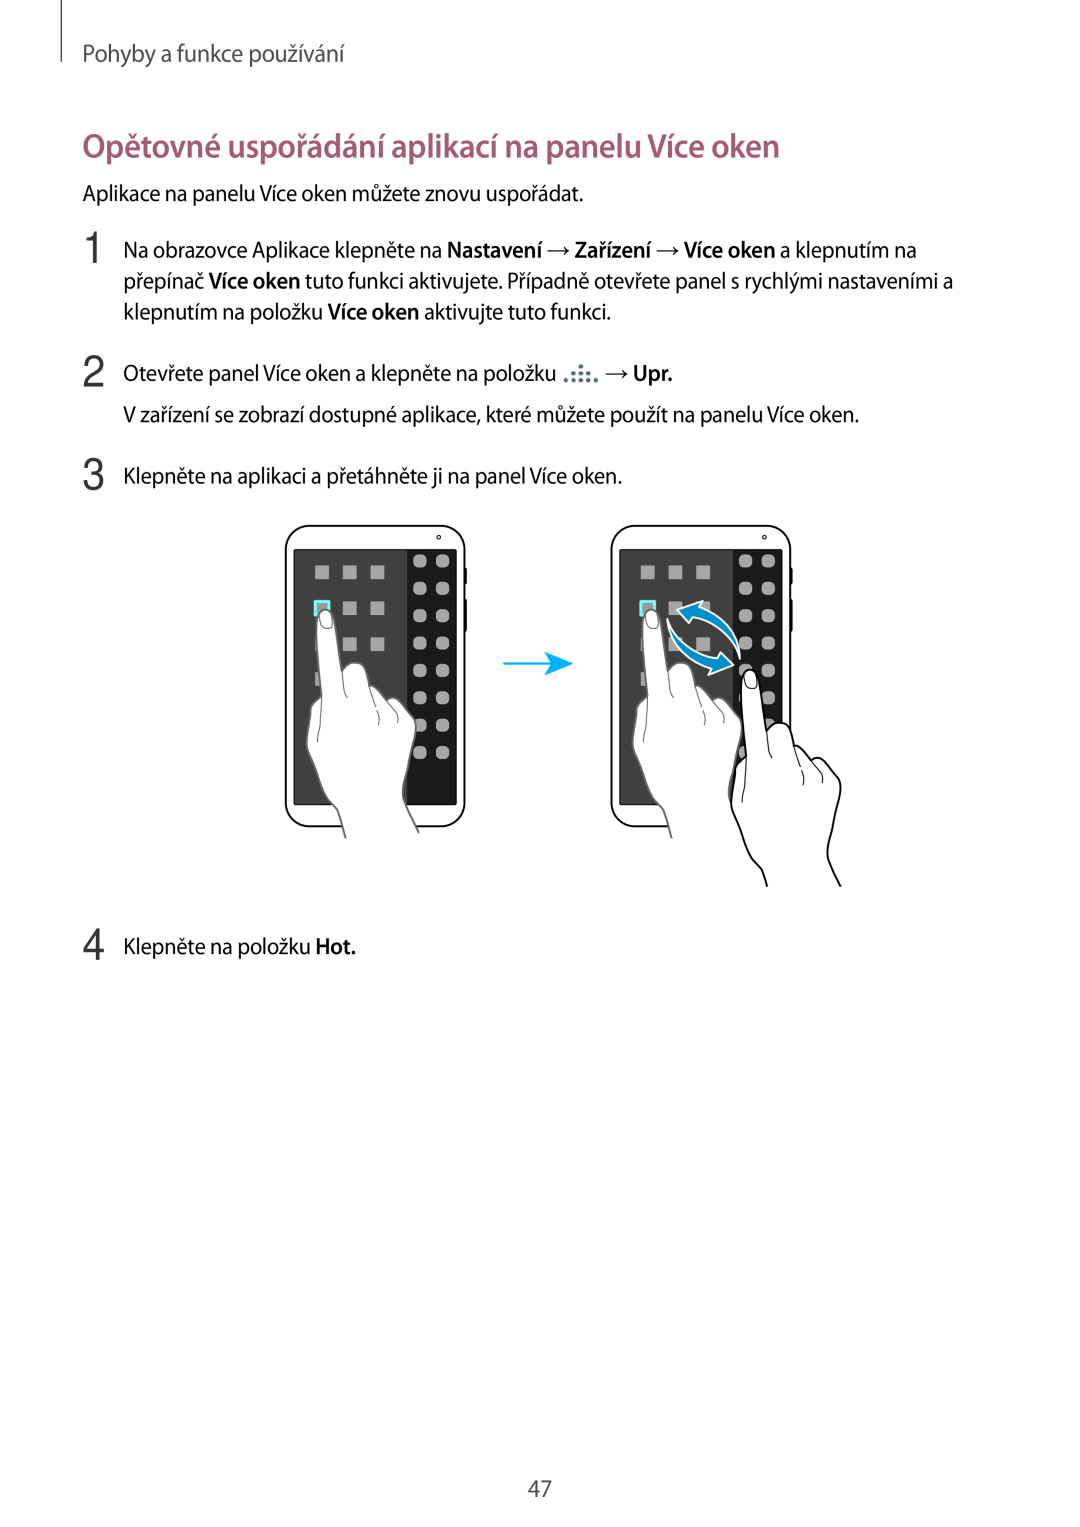 Samsung SM-T700NTSAXEO, SM-T700NZWAXEO manual Opětovné uspořádání aplikací na panelu Více oken, Pohyby a funkce používání 